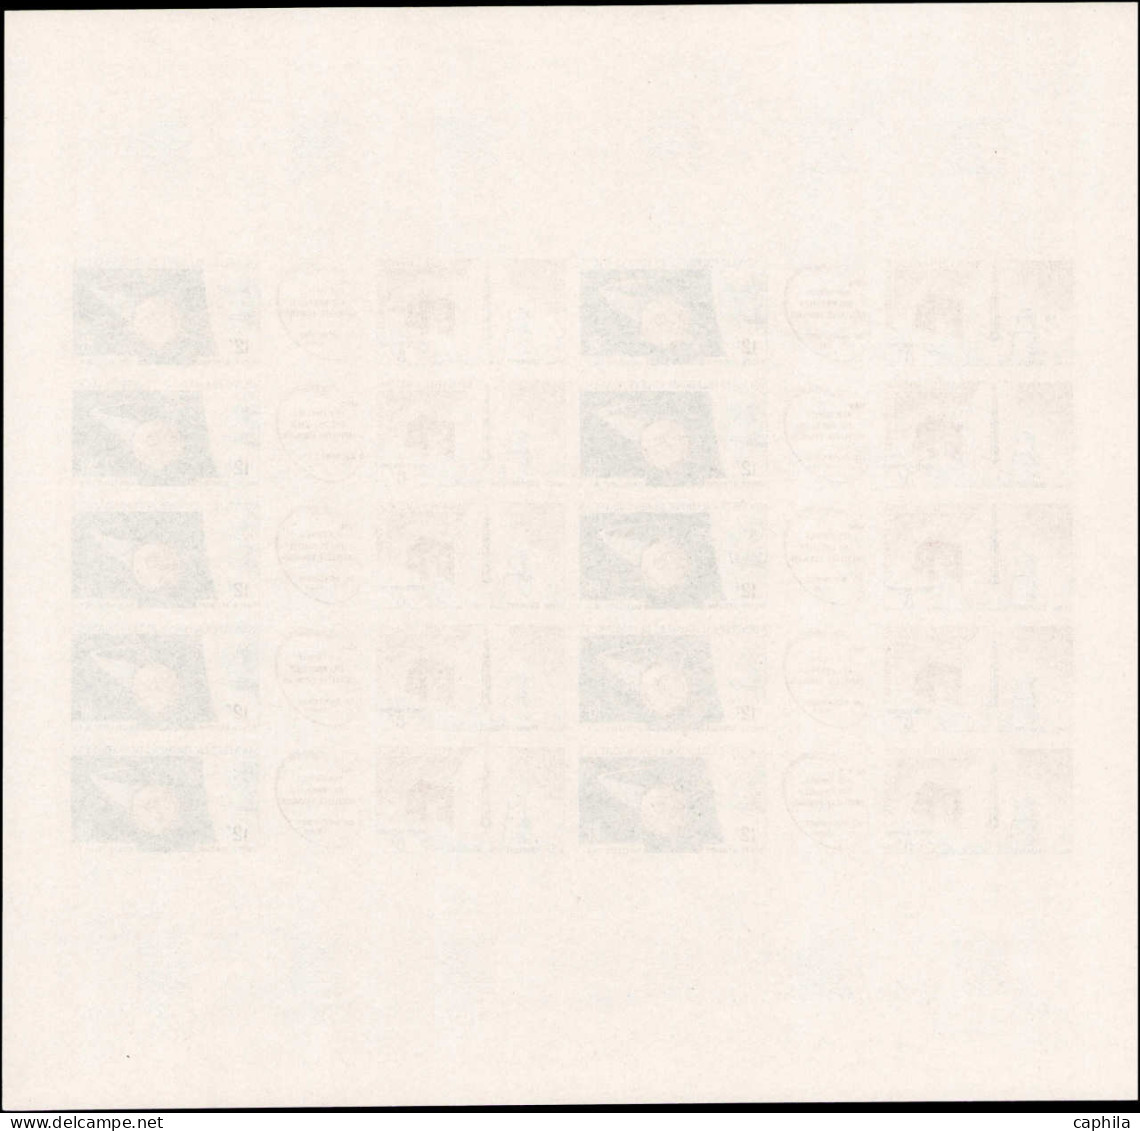 COLONIES SERIES Poste Aérienne ** - 1966, Fusée Diamant, exceptionnel ensemble de 7 feuilles entières non dentelées Dom-